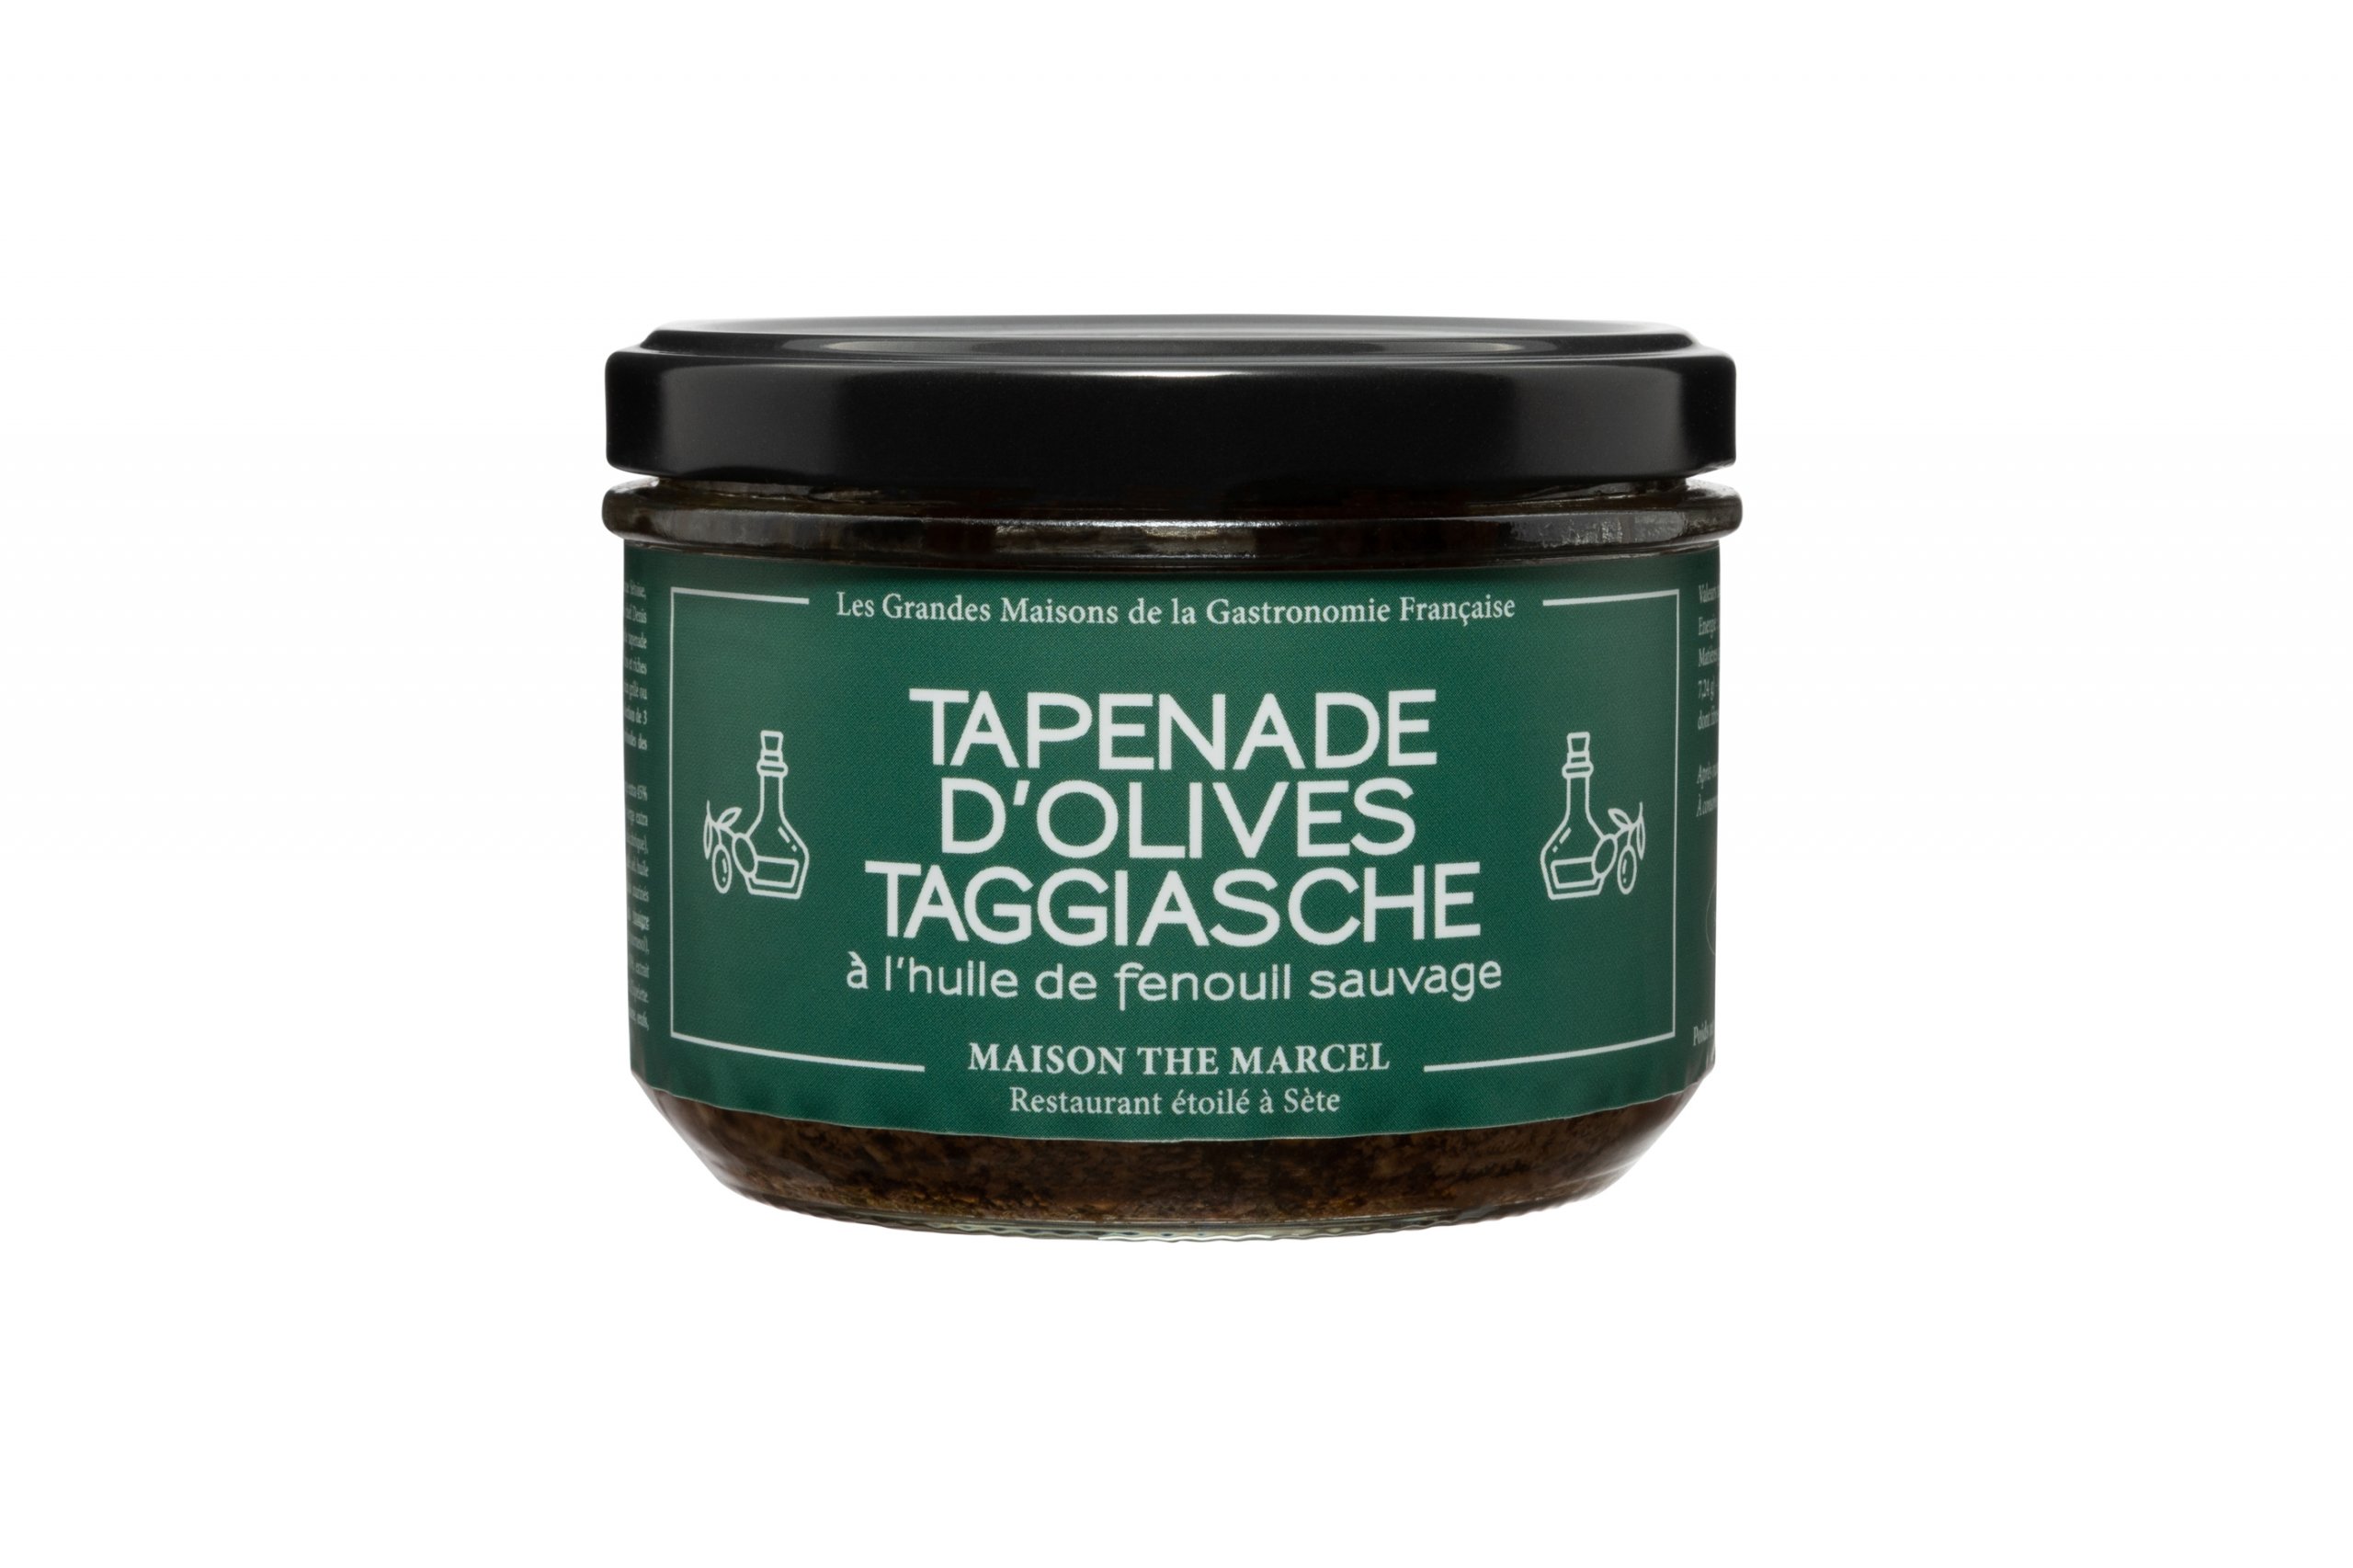 Tapenade d'olives Taggiasche à l'huile de fenouil sauvage